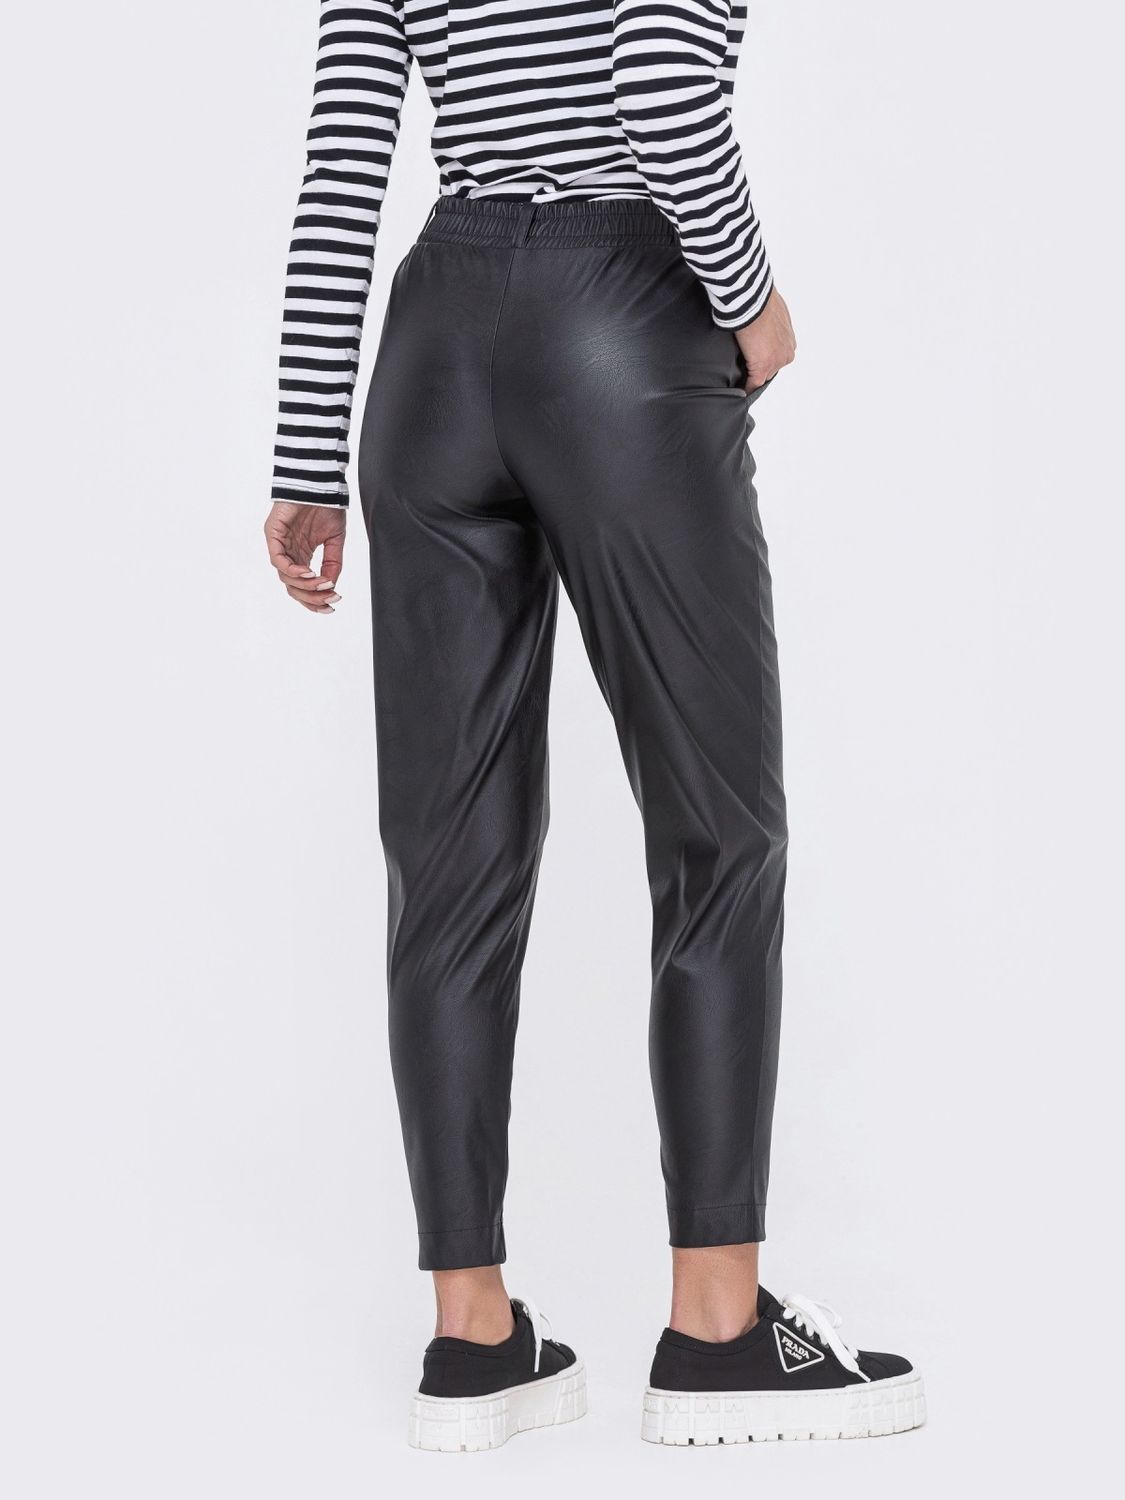 Зауженные брюки из эко-кожи черного цвета - фото